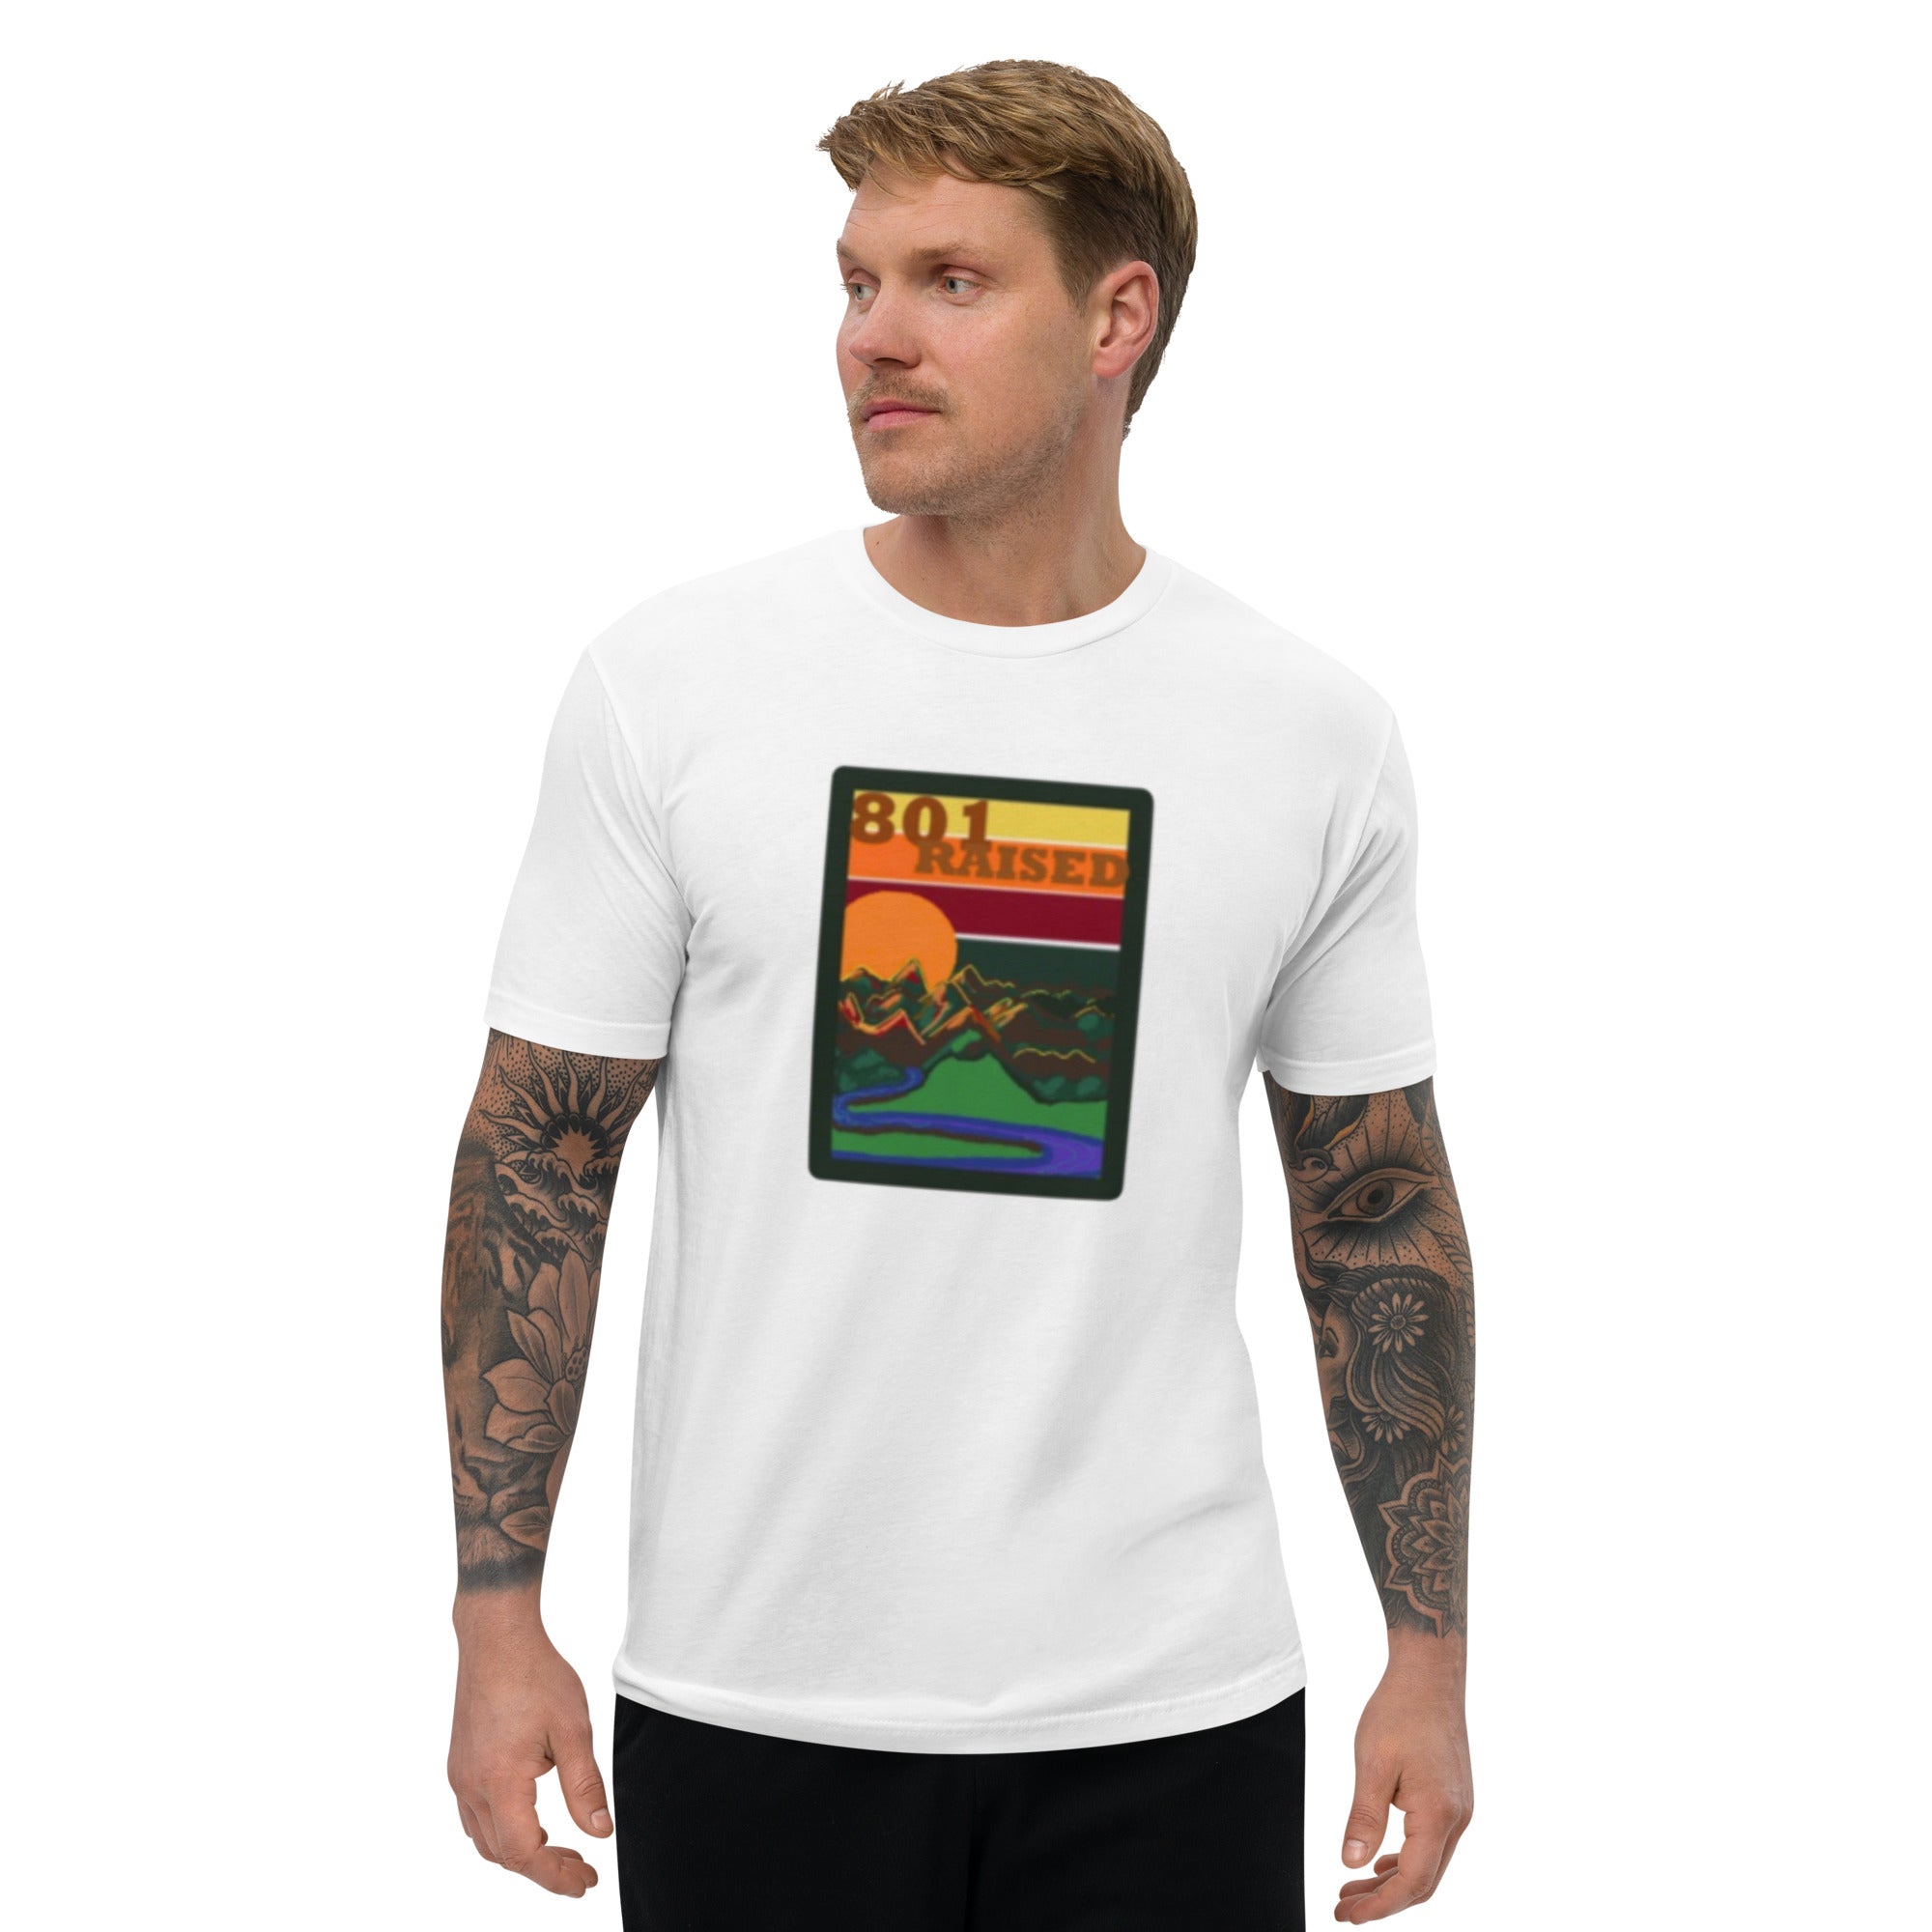 Short Sleeve abca.ogden river T-shirt